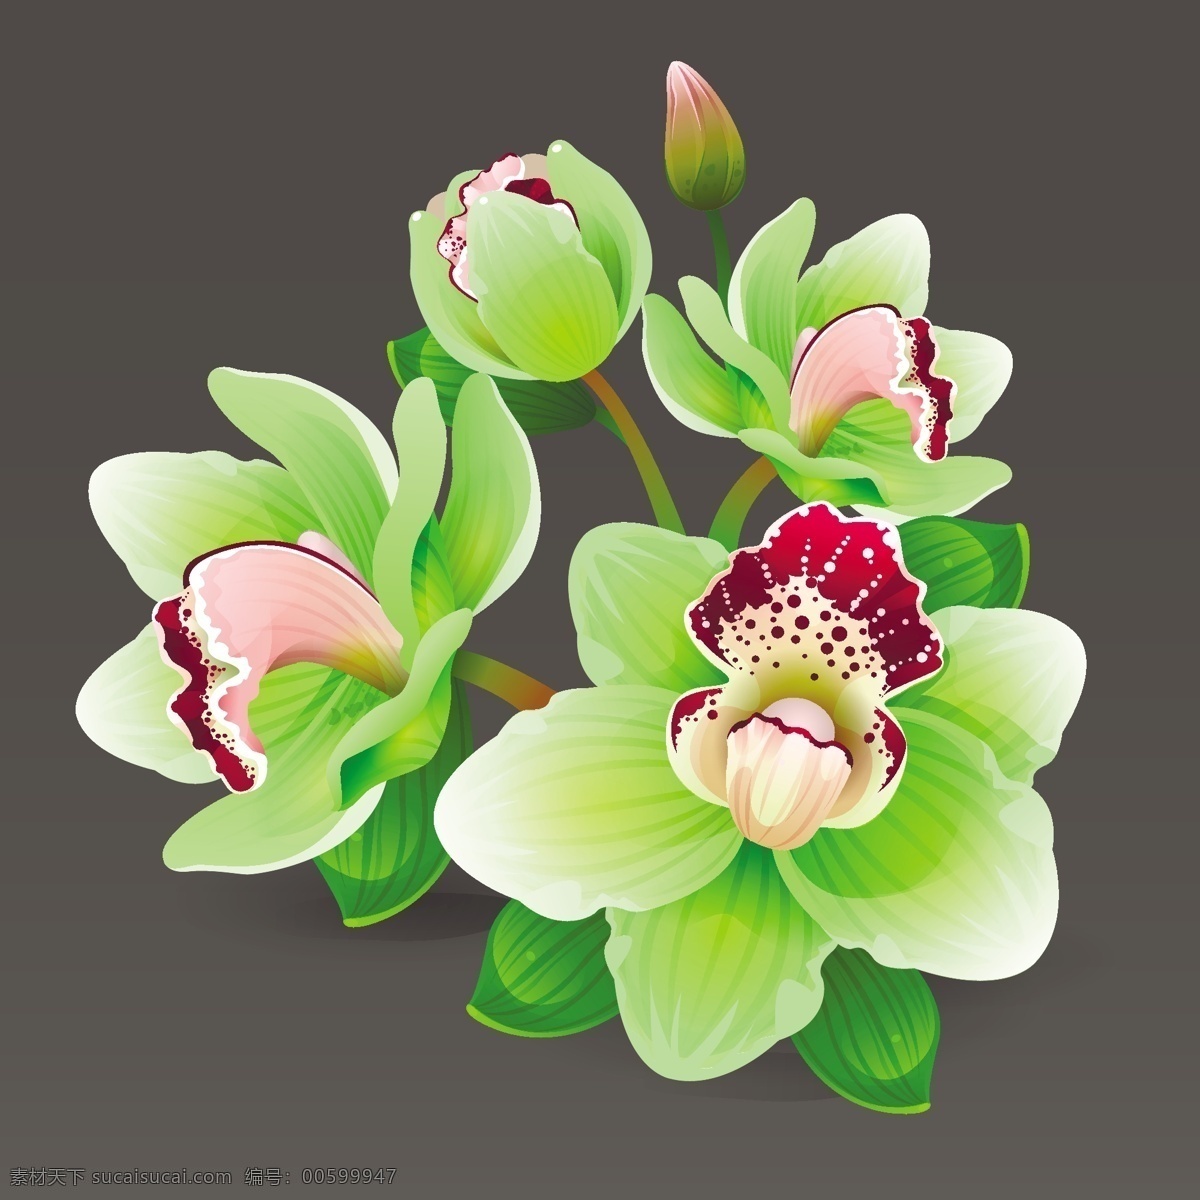 精致的兰花 植物 手绘 兰花 精致 唯美 绿色